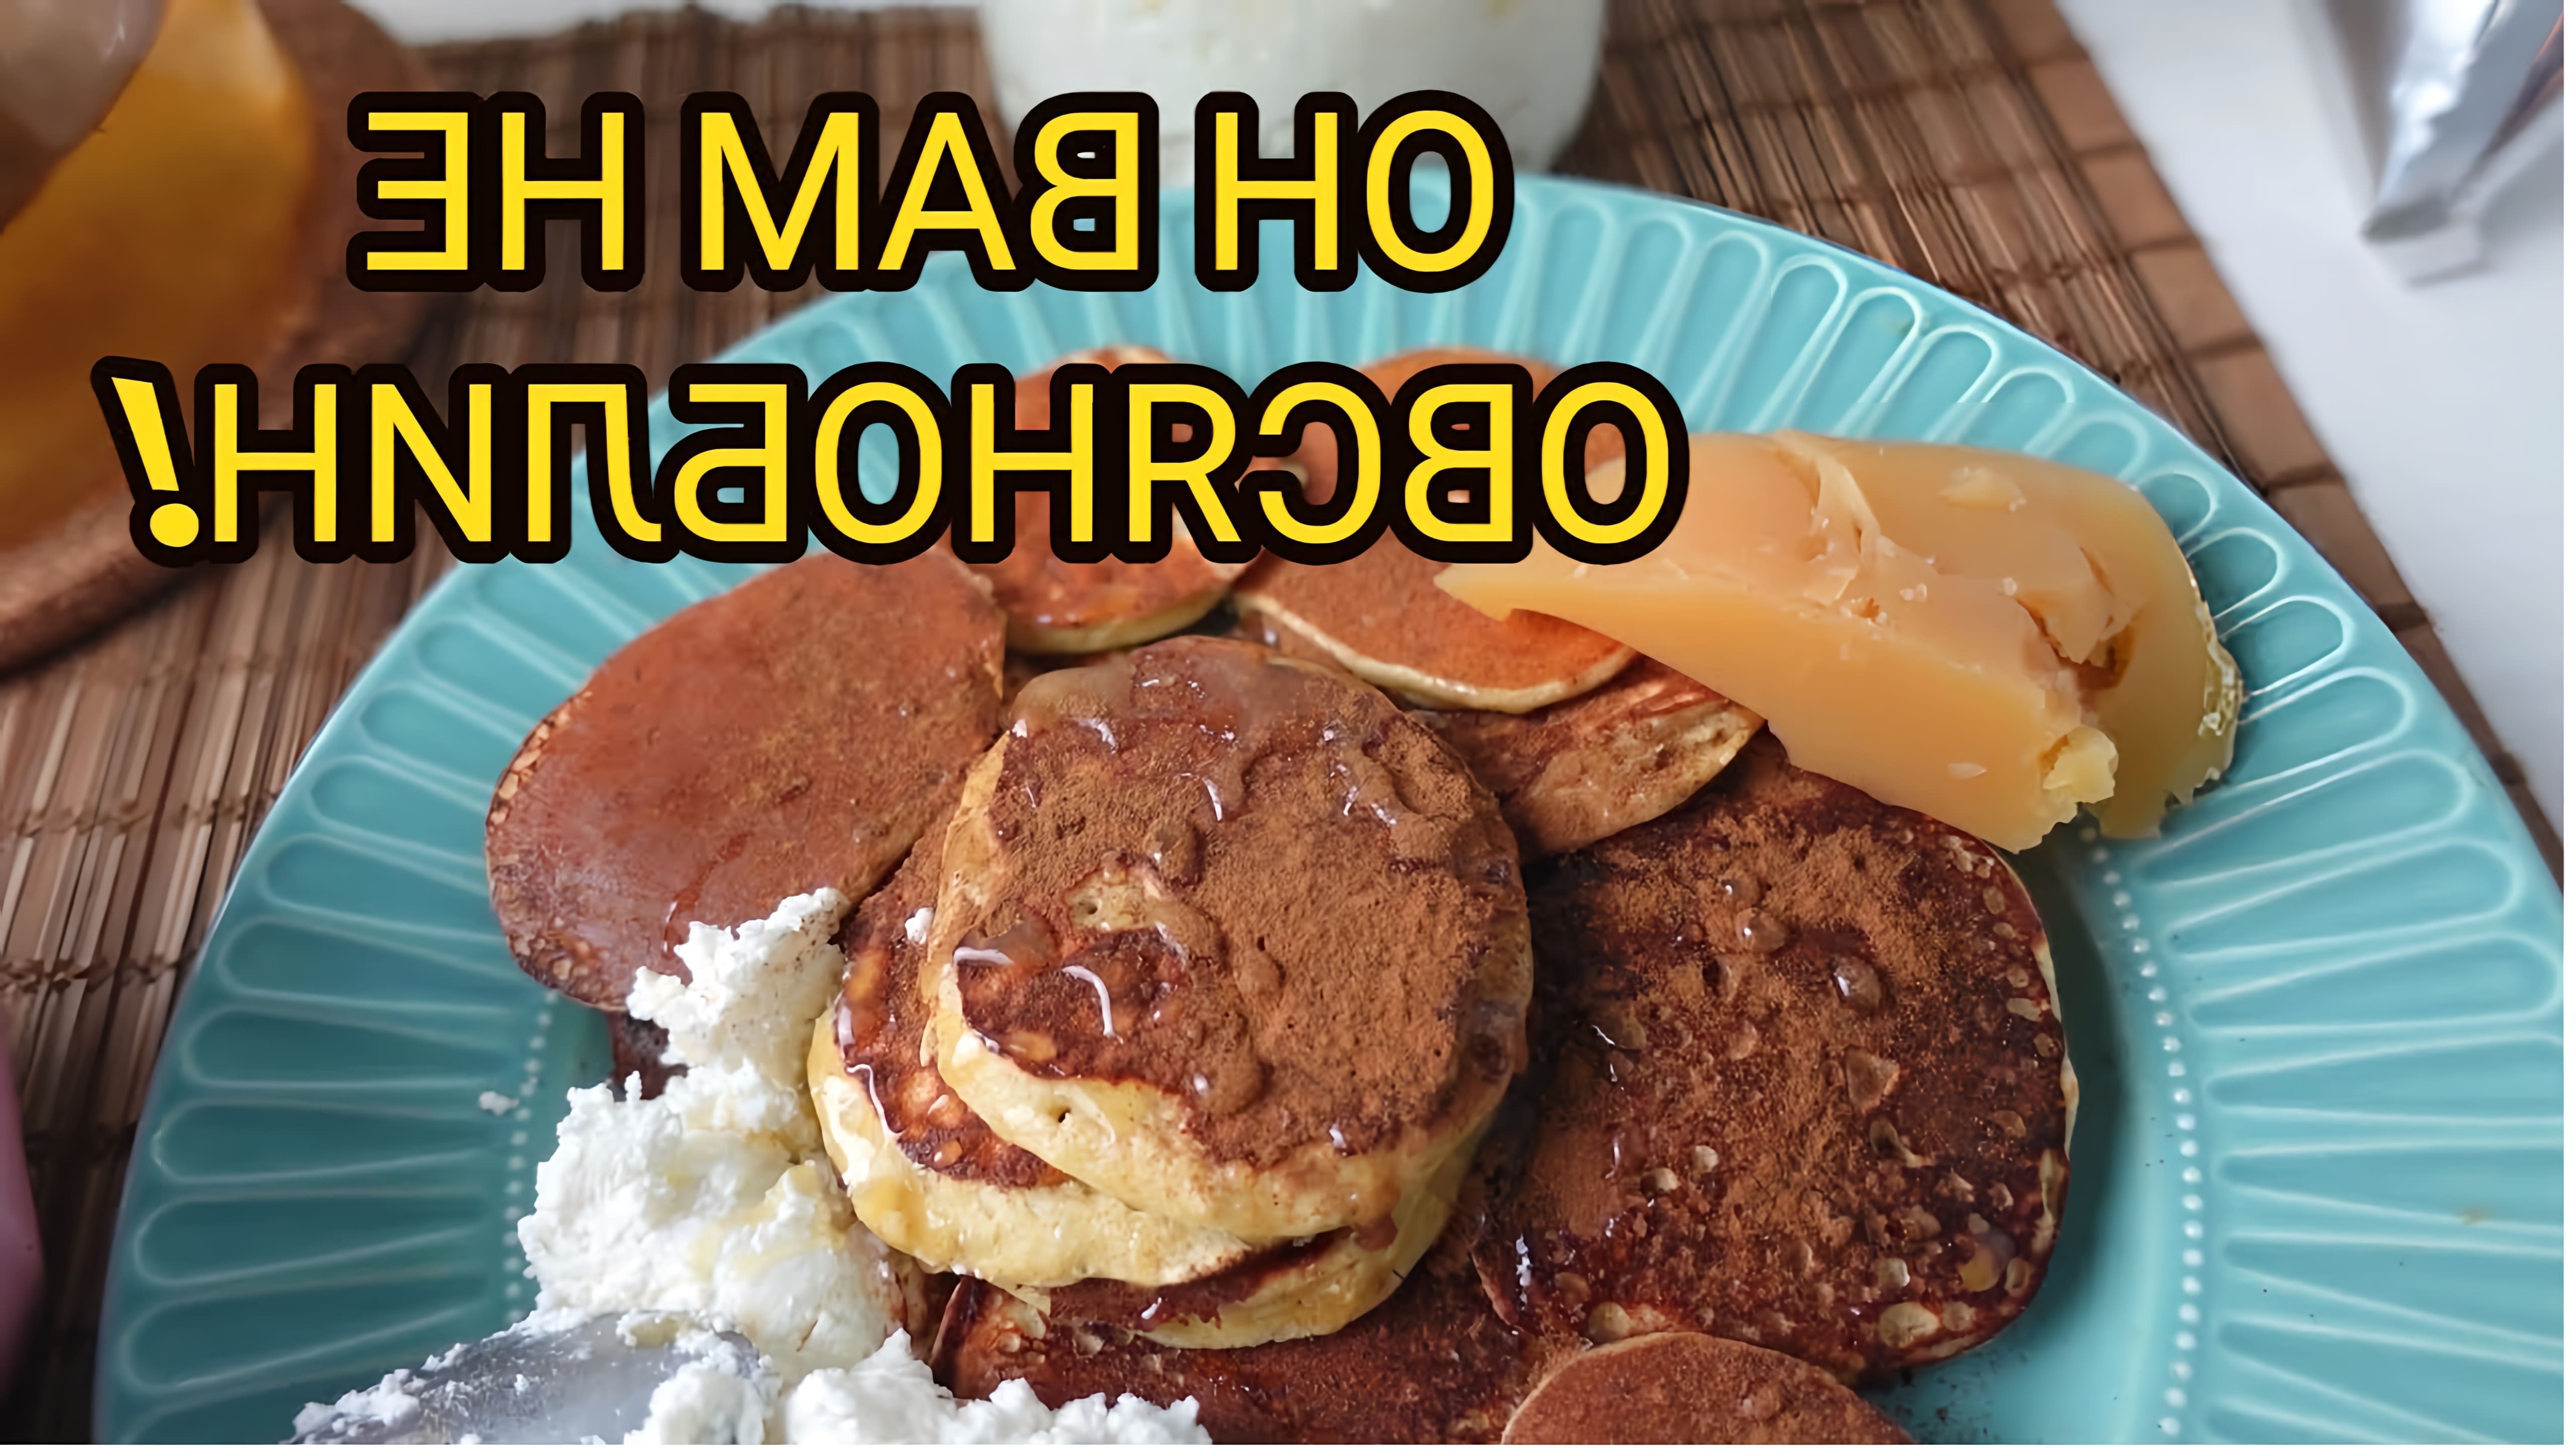 В этом видео демонстрируется рецепт приготовления домашних панкейков или оладий на завтрак